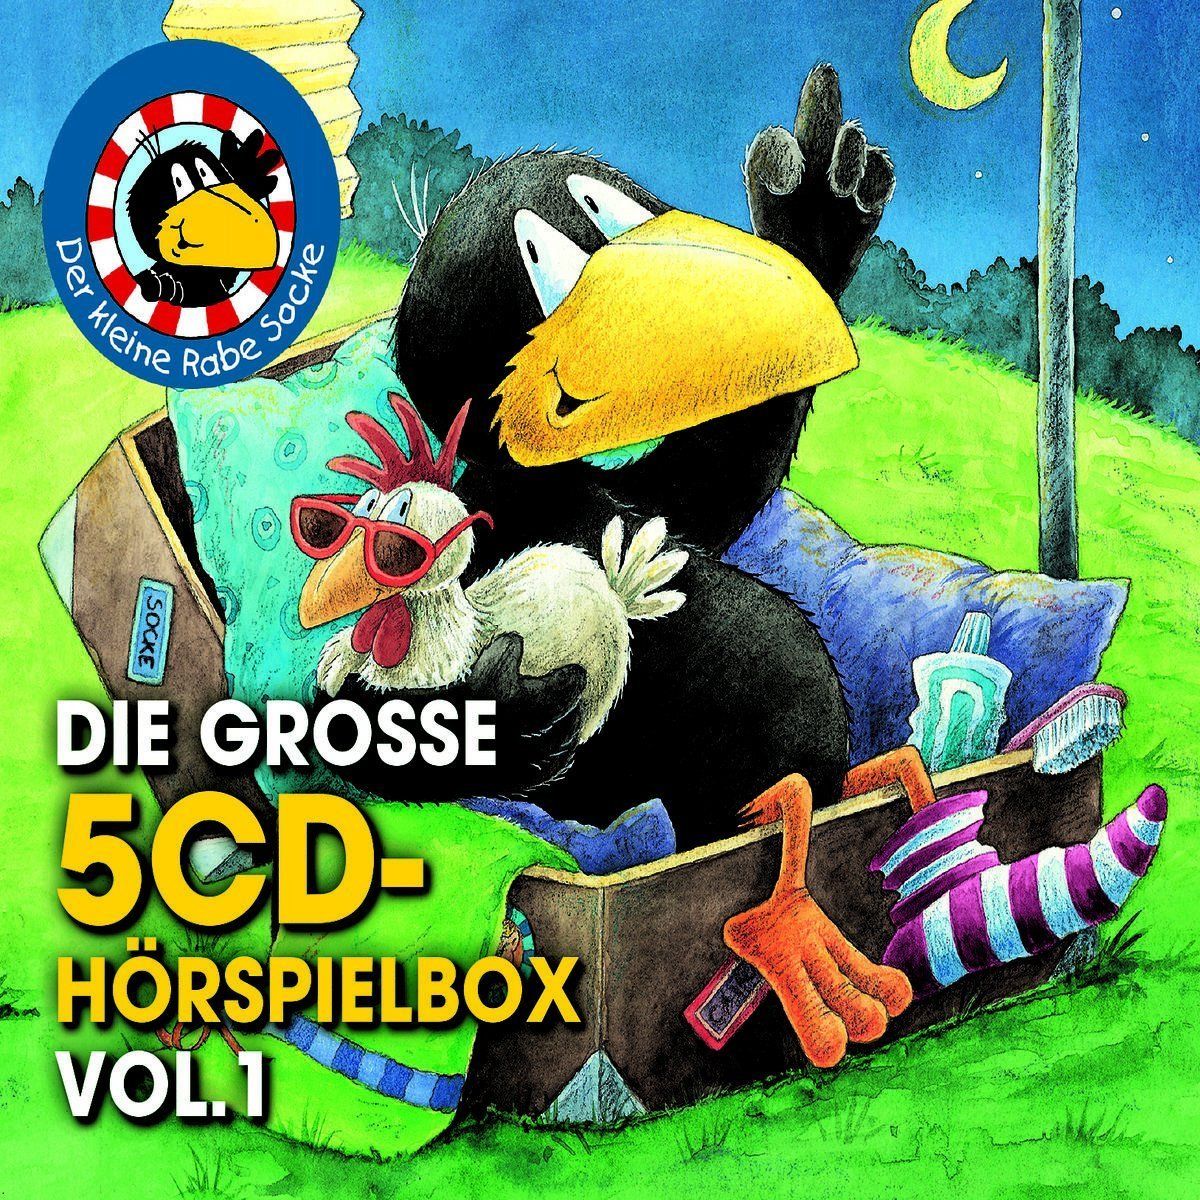 5 CDs * DER KLEINE RABE SOCKE - DIE GROSSE 5-CD HÖRSPIEL BOX VOL. 1  # NEU OVP !